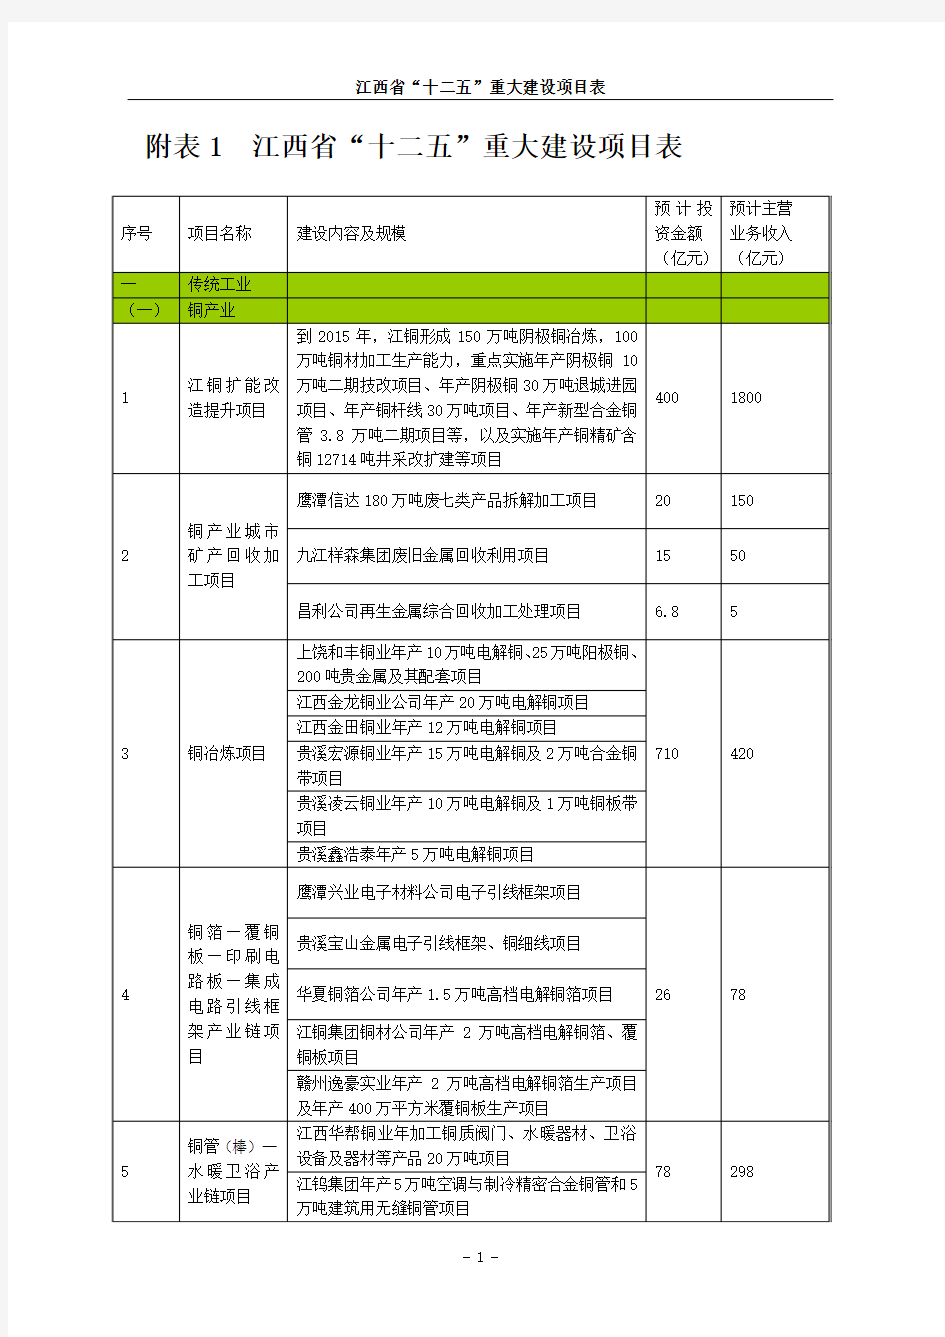 附表1 江西省“十二五”重大建设项目表